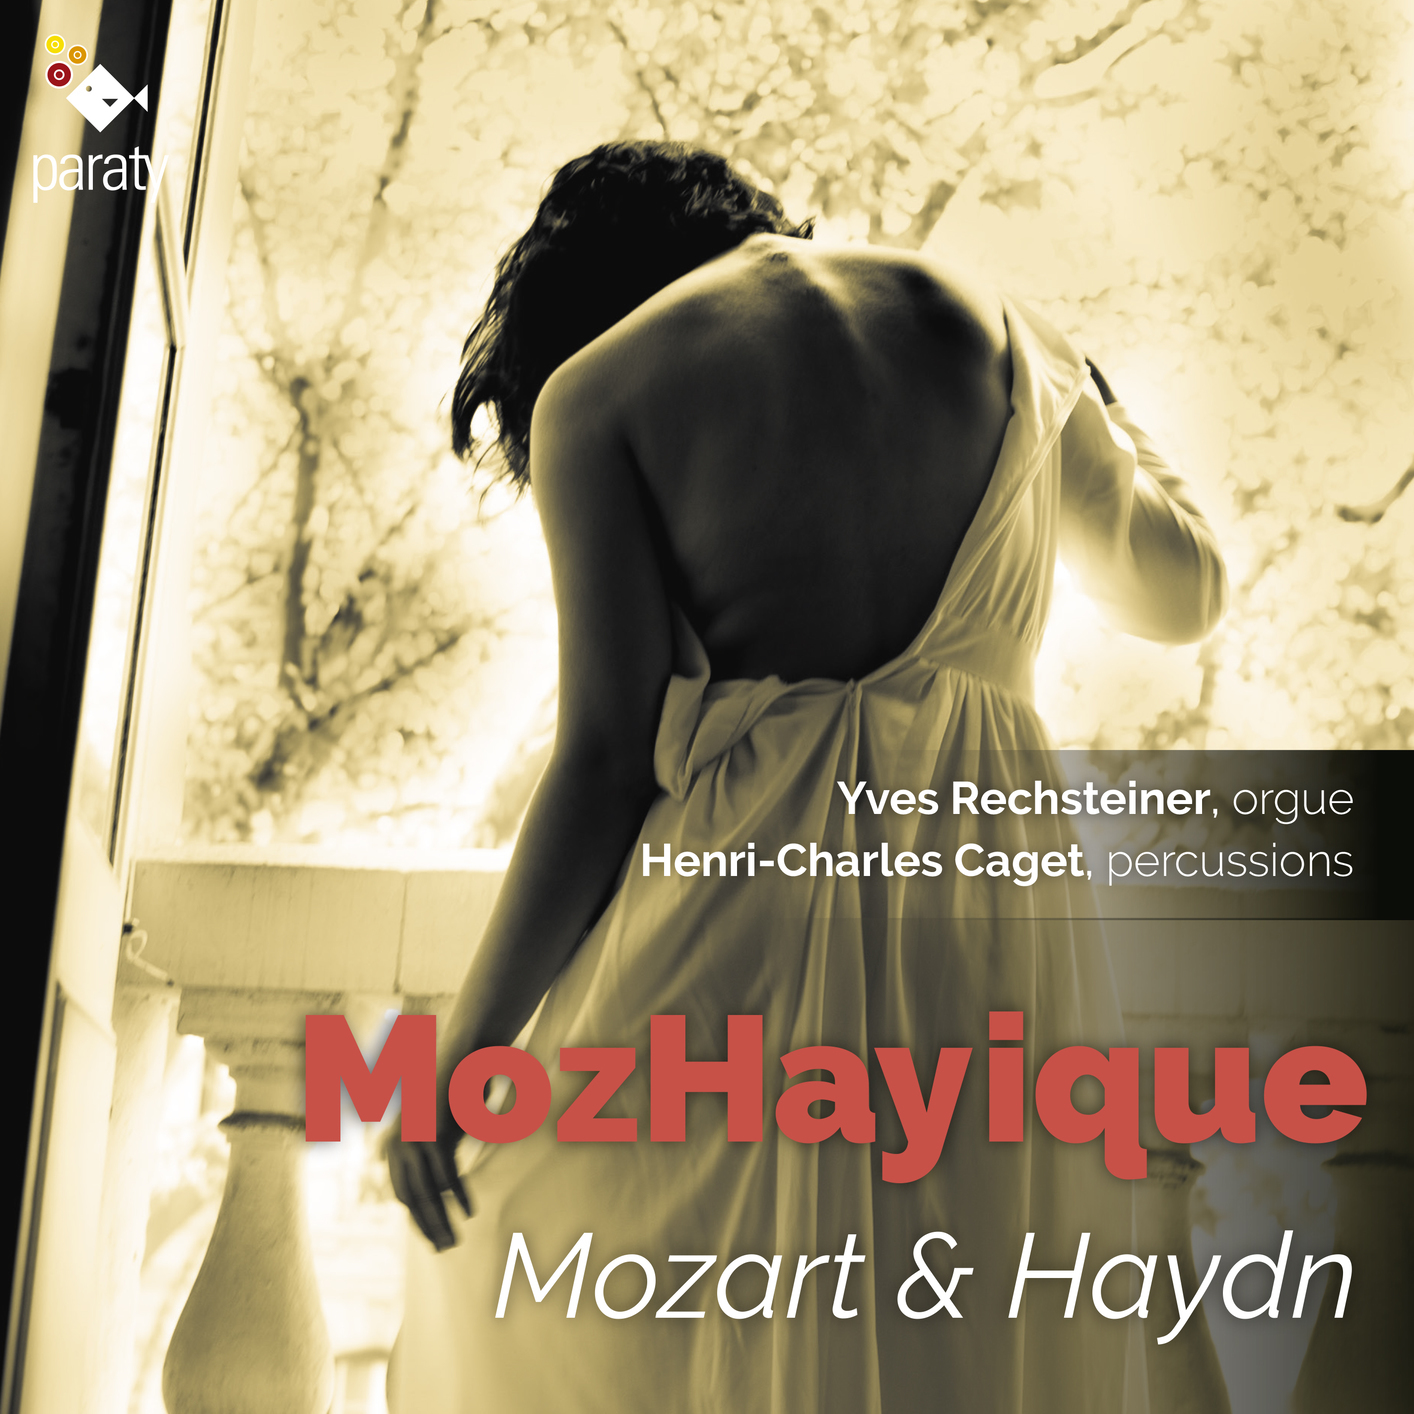 Yves Rechsteiner & Henri-Charles Caget – MozHayique: Mozart & Haydn (2018) [FLAC 24bit/96kHz]